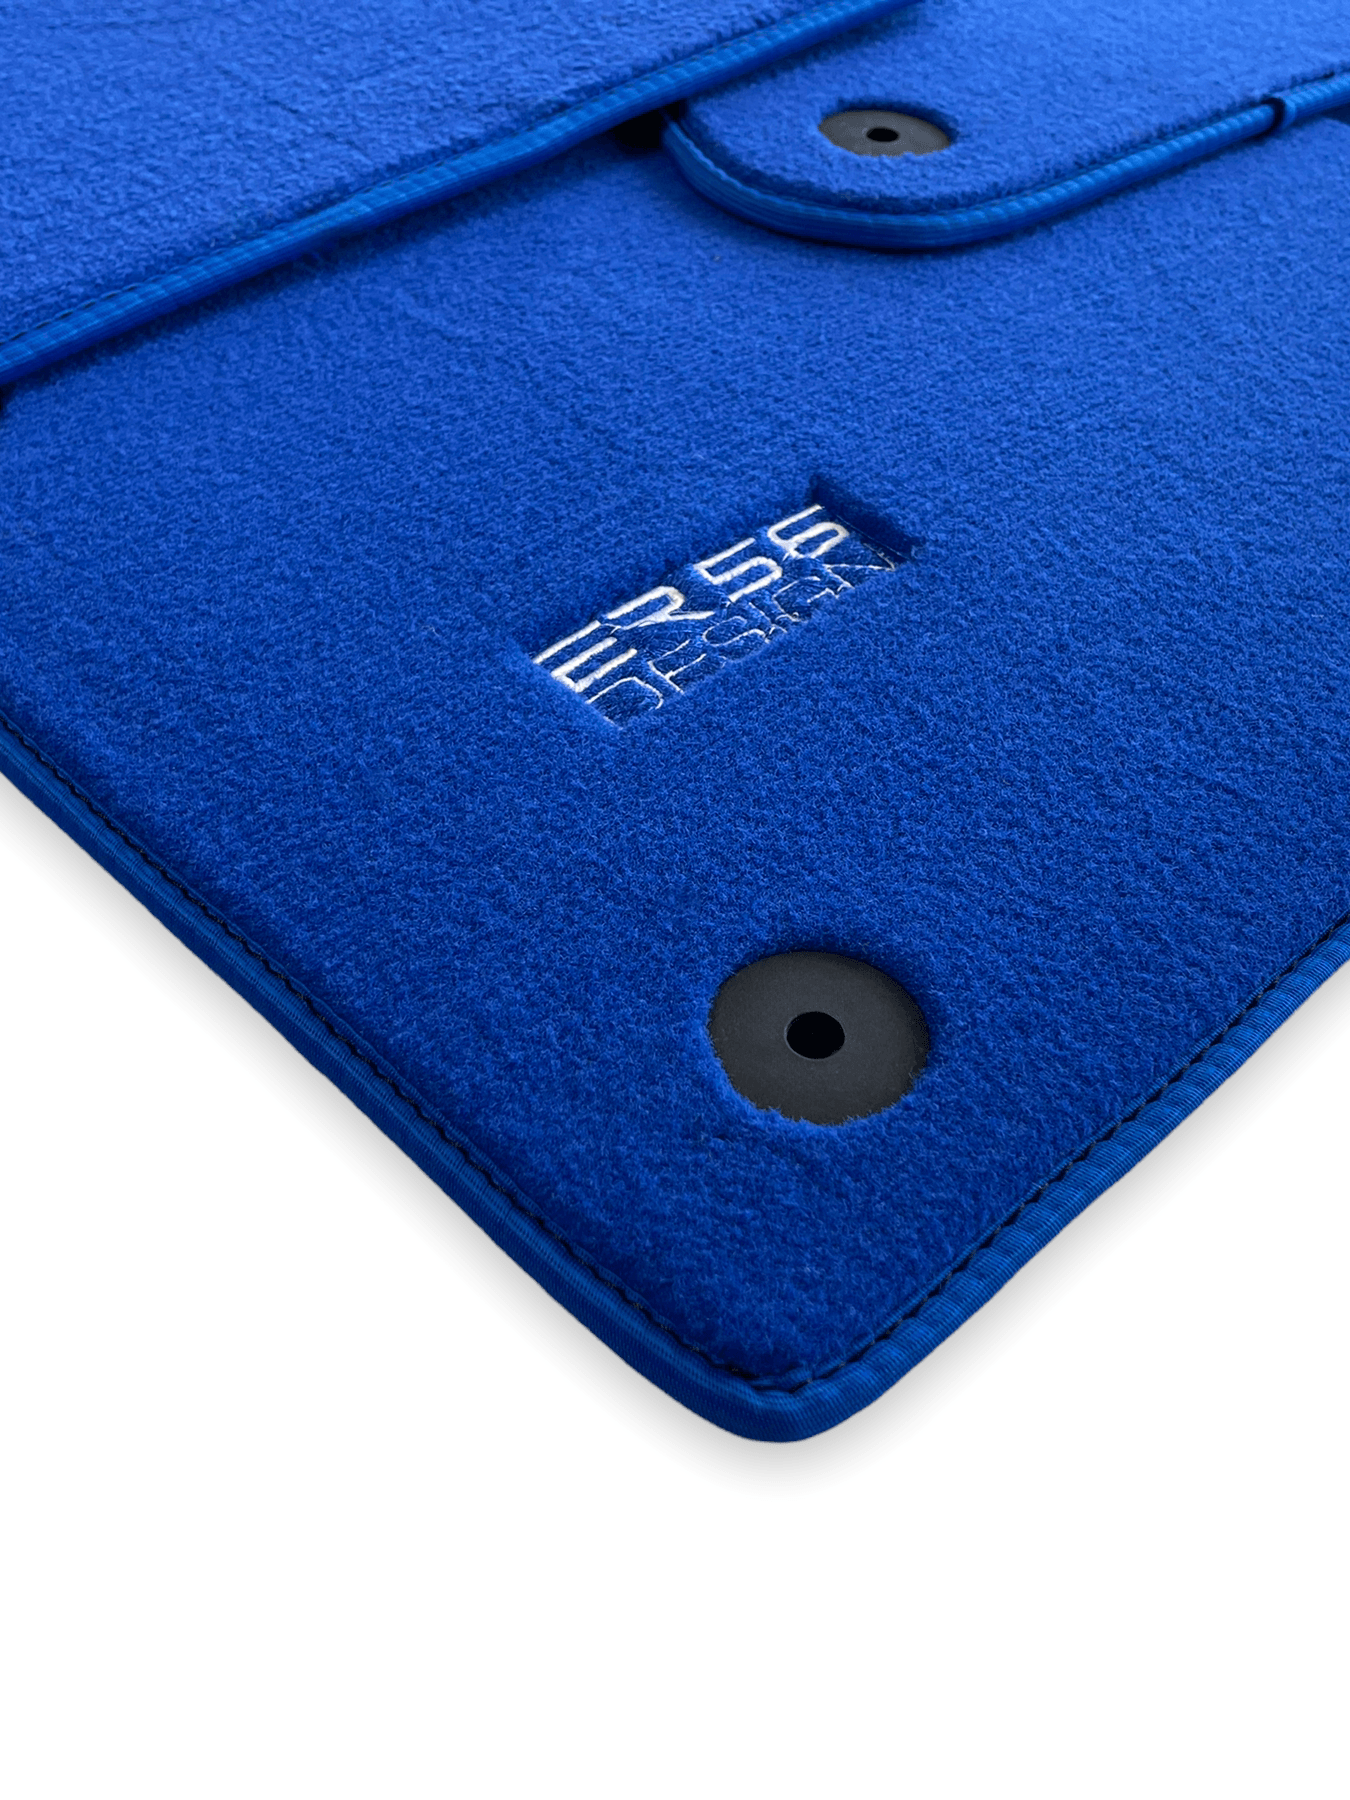 Blue Floor Mats for Audi A5 - 8F7 Convertible (2009-2017) | ER56 Design